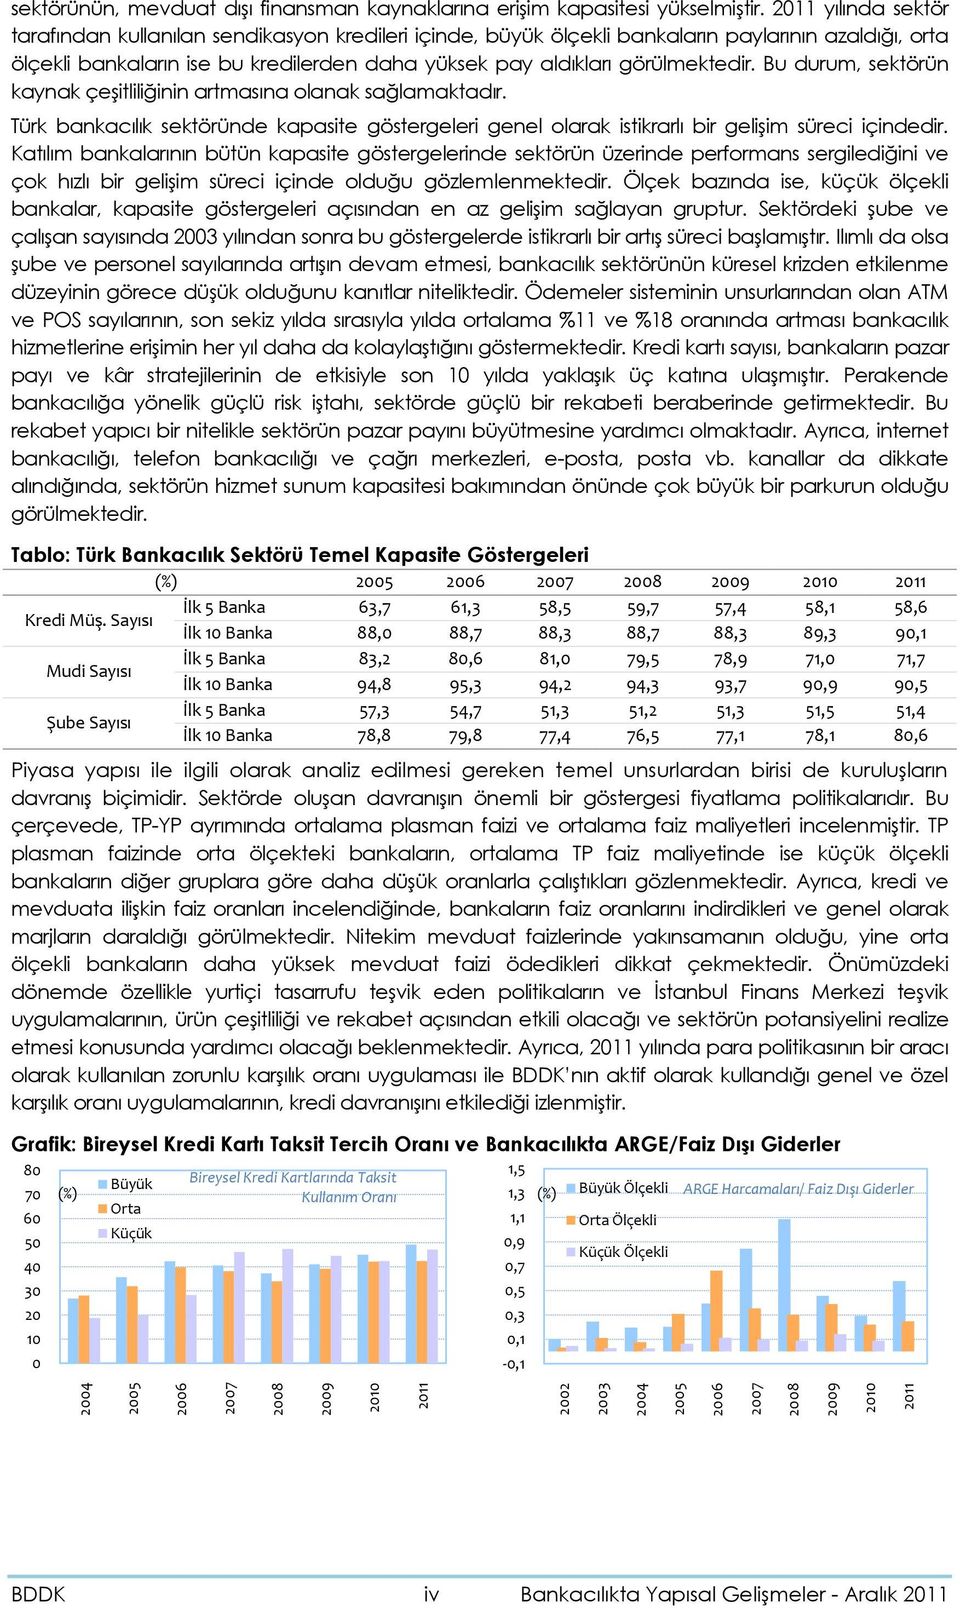 Bu durum, sektörün kaynak çeşitliliğinin artmasına olanak sağlamaktadır. Türk bankacılık sektöründe kapasite göstergeleri genel olarak istikrarlı bir gelişim süreci içindedir.